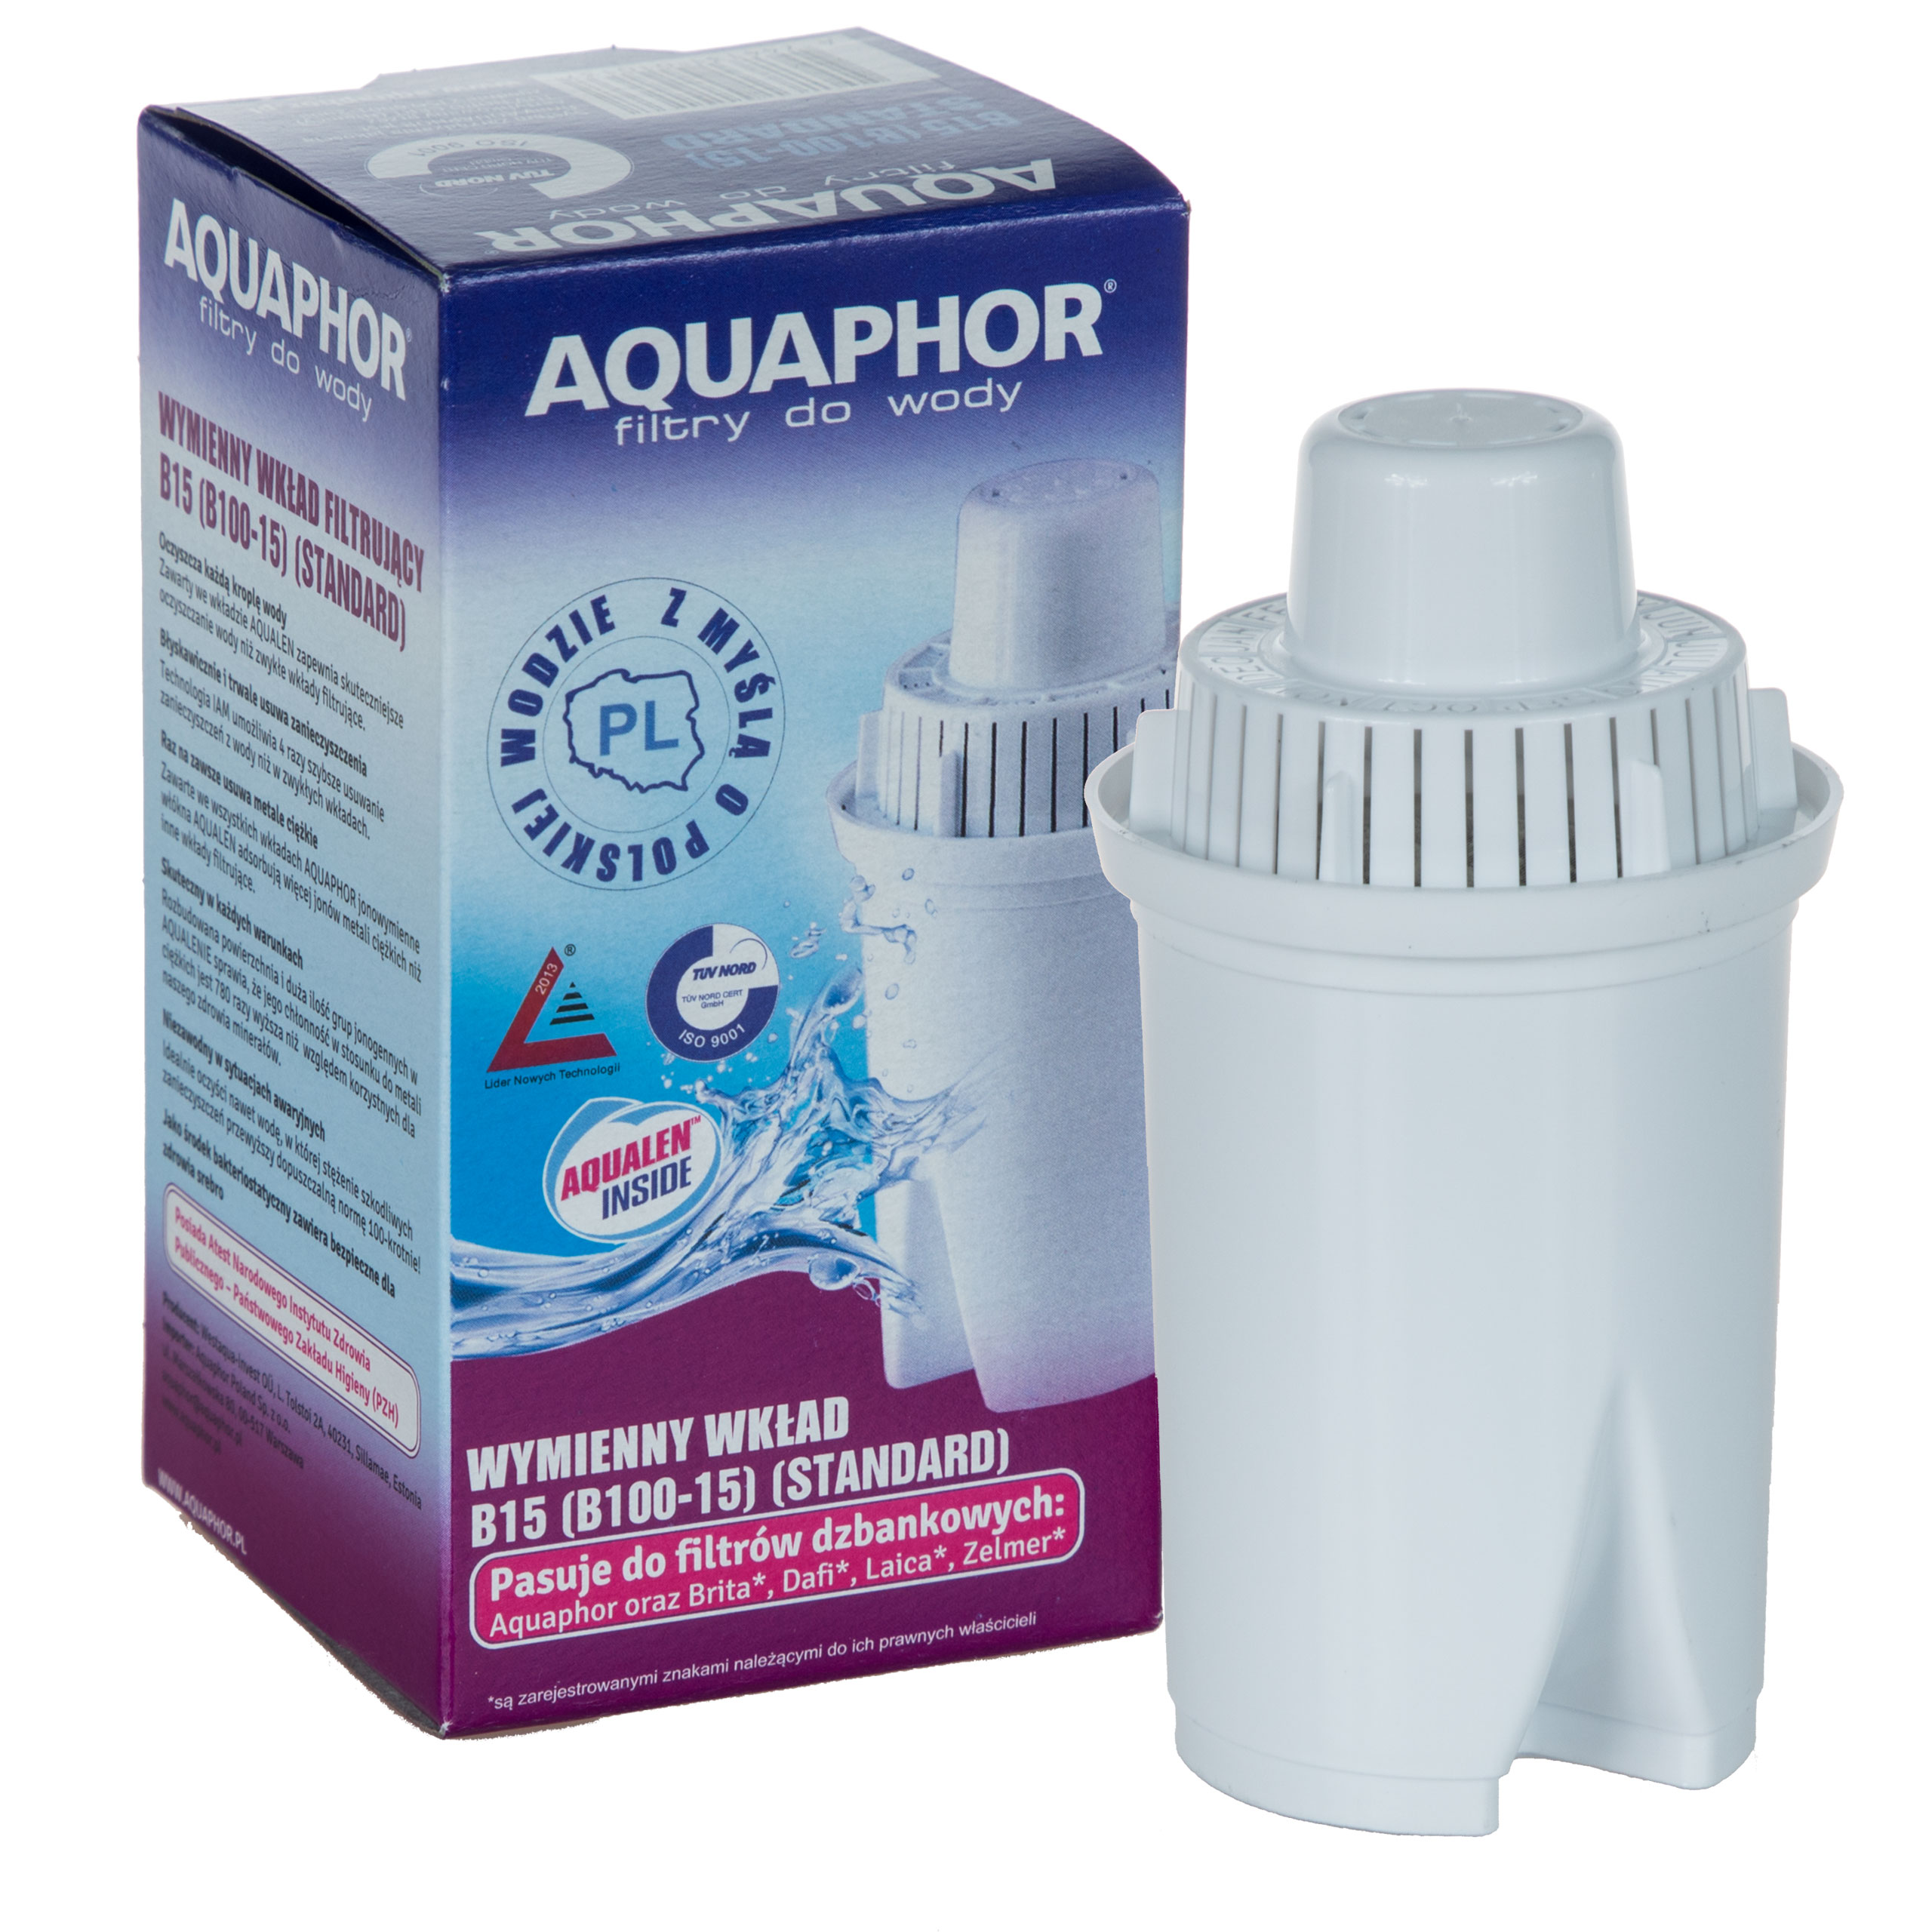 Фильтр аквафор кувшин картридж купить. Фильтр Аквафор в 100-15. Фильтр для воды Аквафор в100-15. Aquaphor Filter Cartridge b15 (b100-15). Фильтр Аквафор 100.